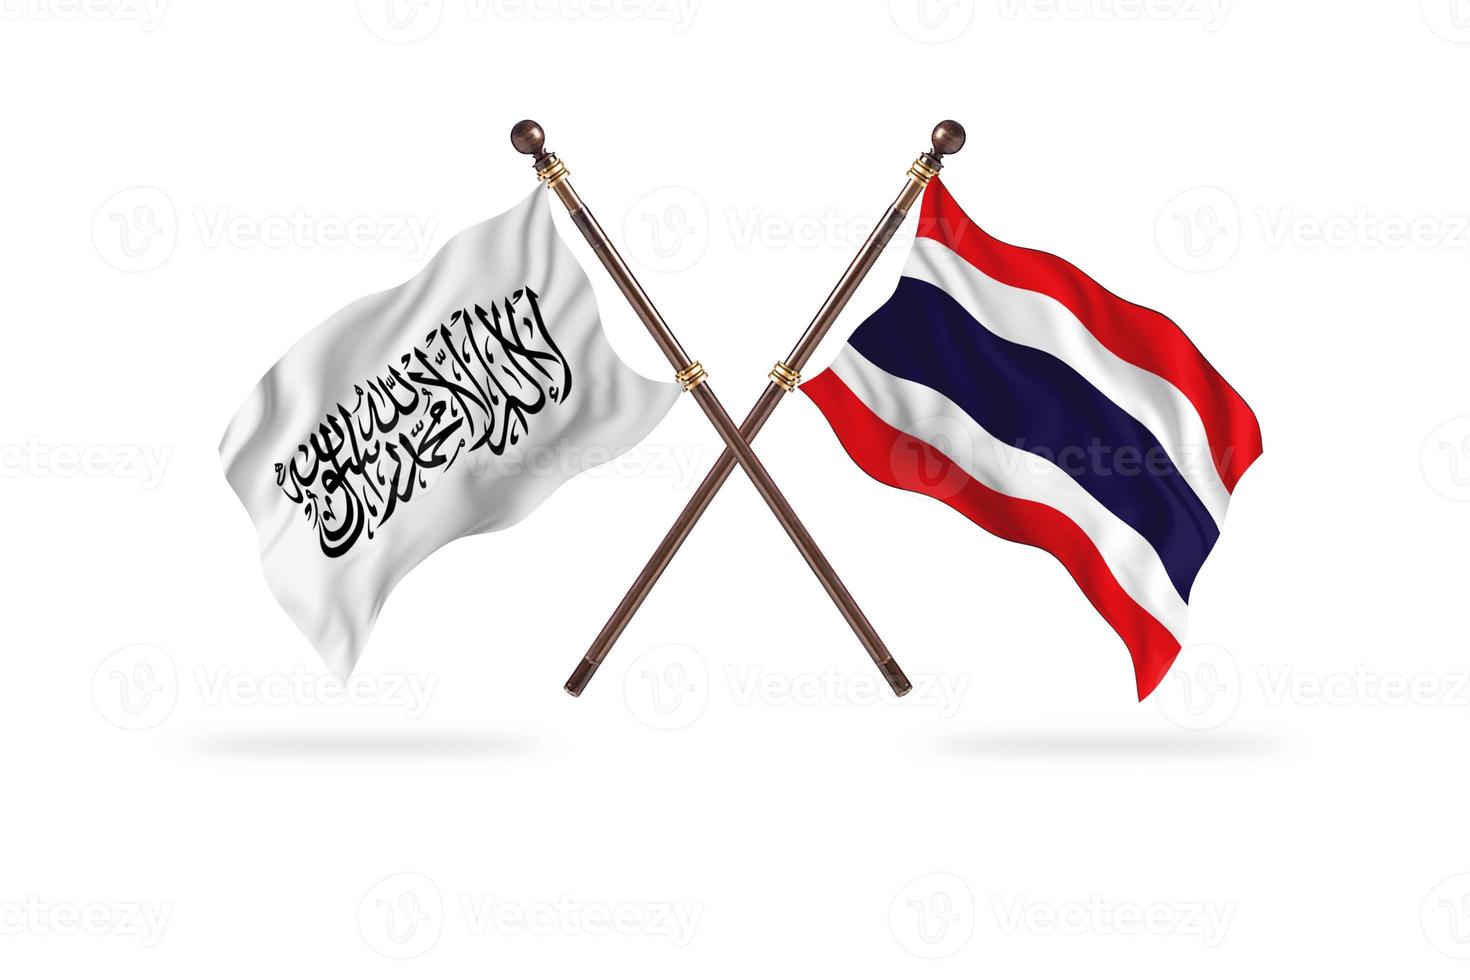 Islamitisch emiraat van afghanistan versus Thailand twee land vlaggen foto